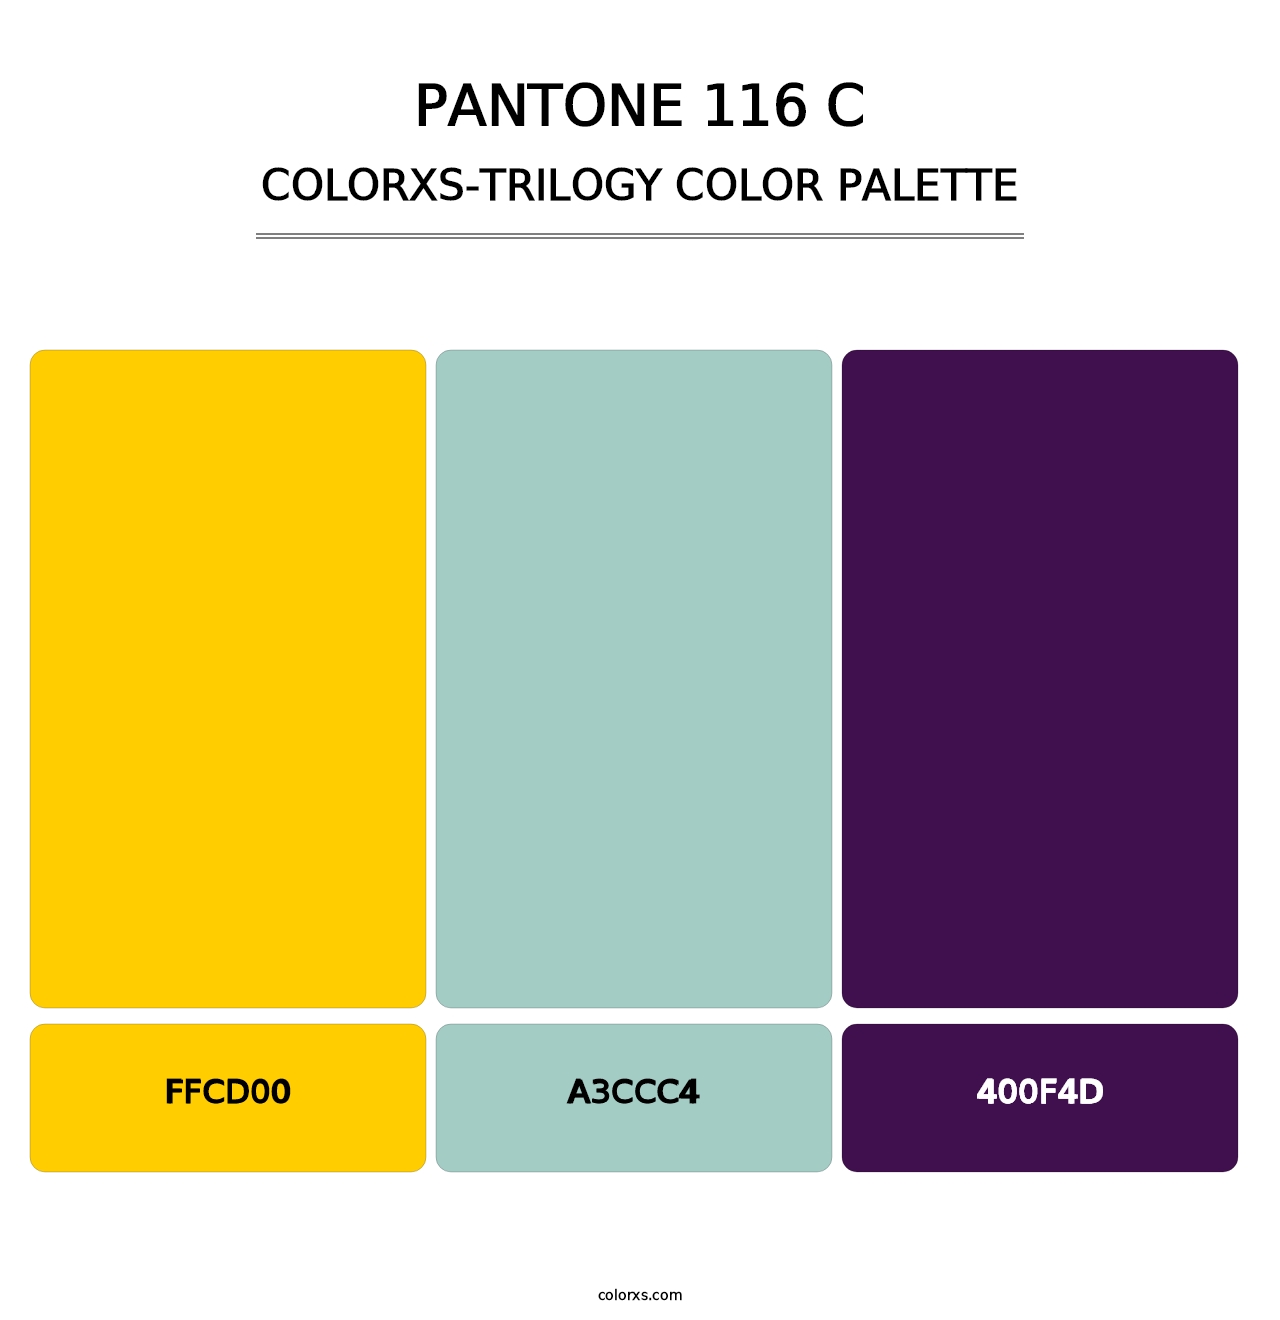 PANTONE 116 C - Colorxs Trilogy Palette